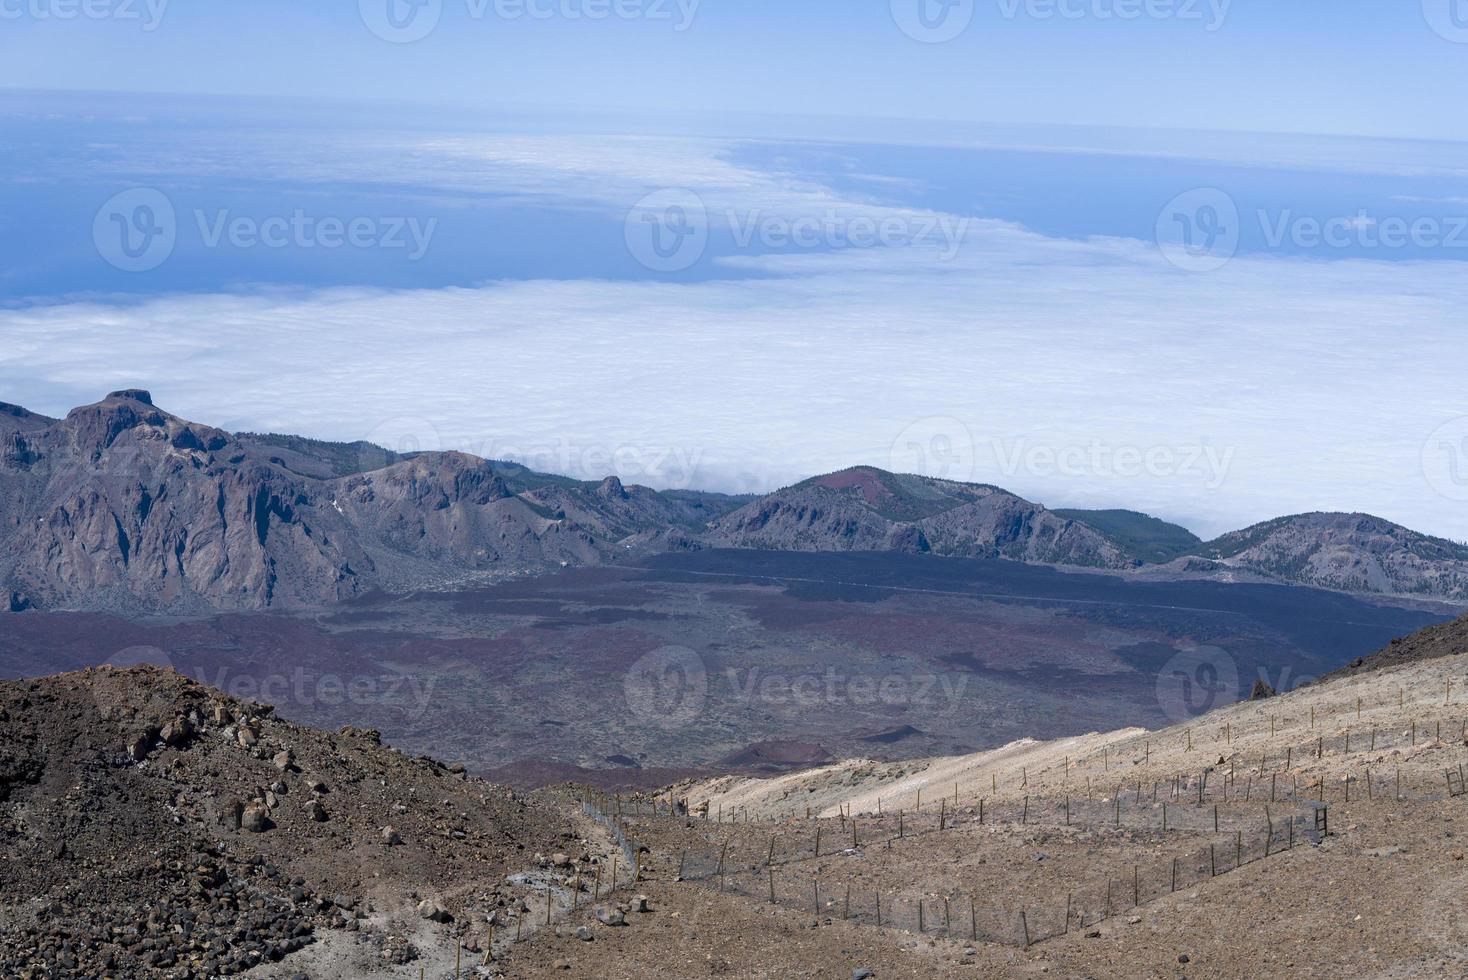 vista do vulcão teide las canadas caldera com lava solidificada. paisagem montanhosa do parque nacional do teide acima das nuvens. tenerife, ilhas canárias, espanha. foto